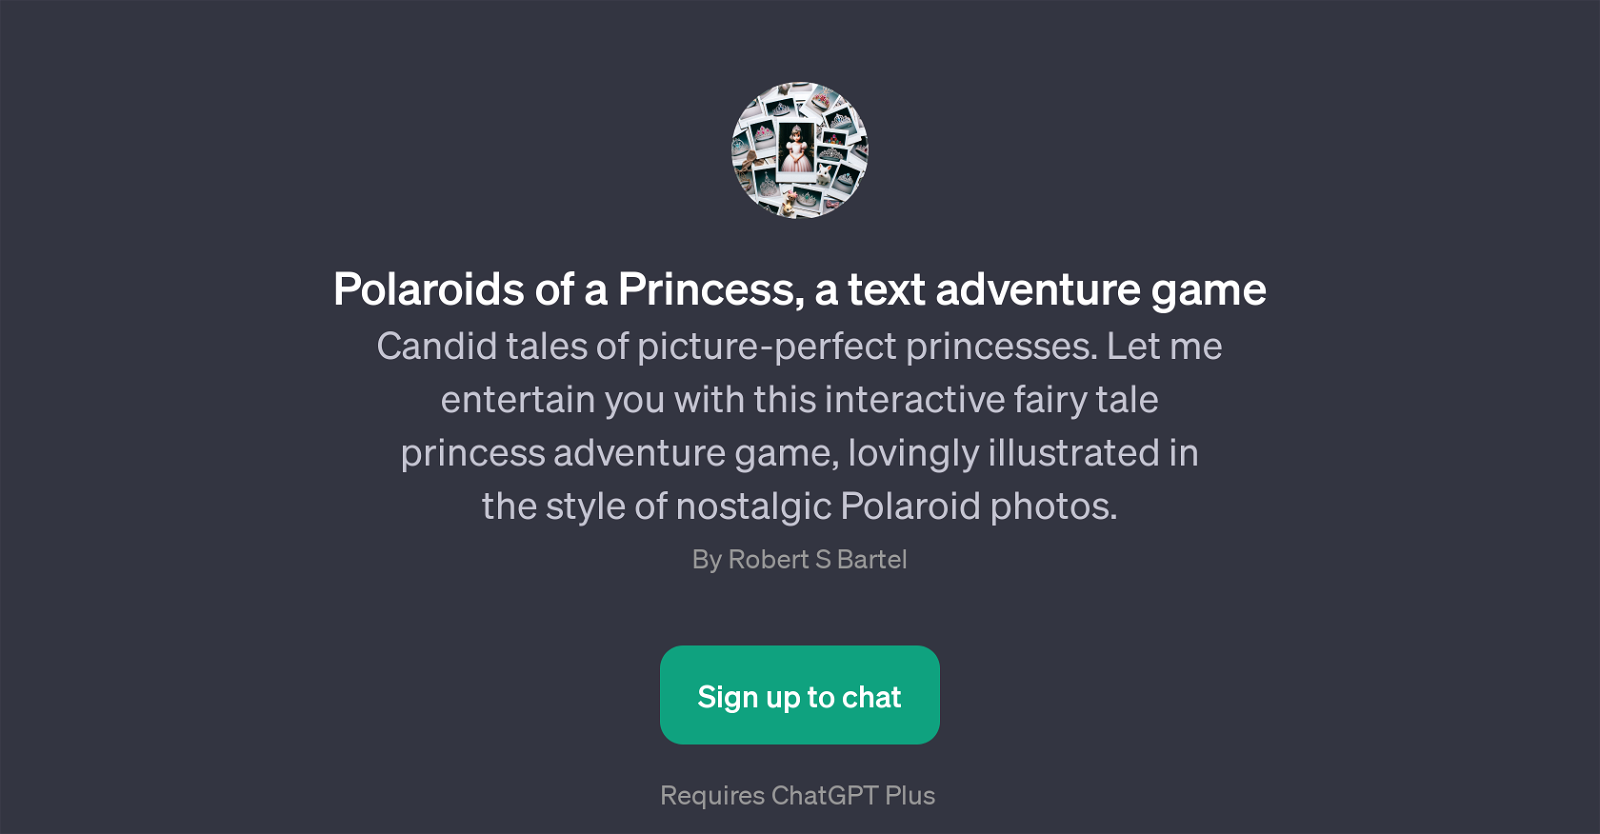 Polaroids of a Princess website